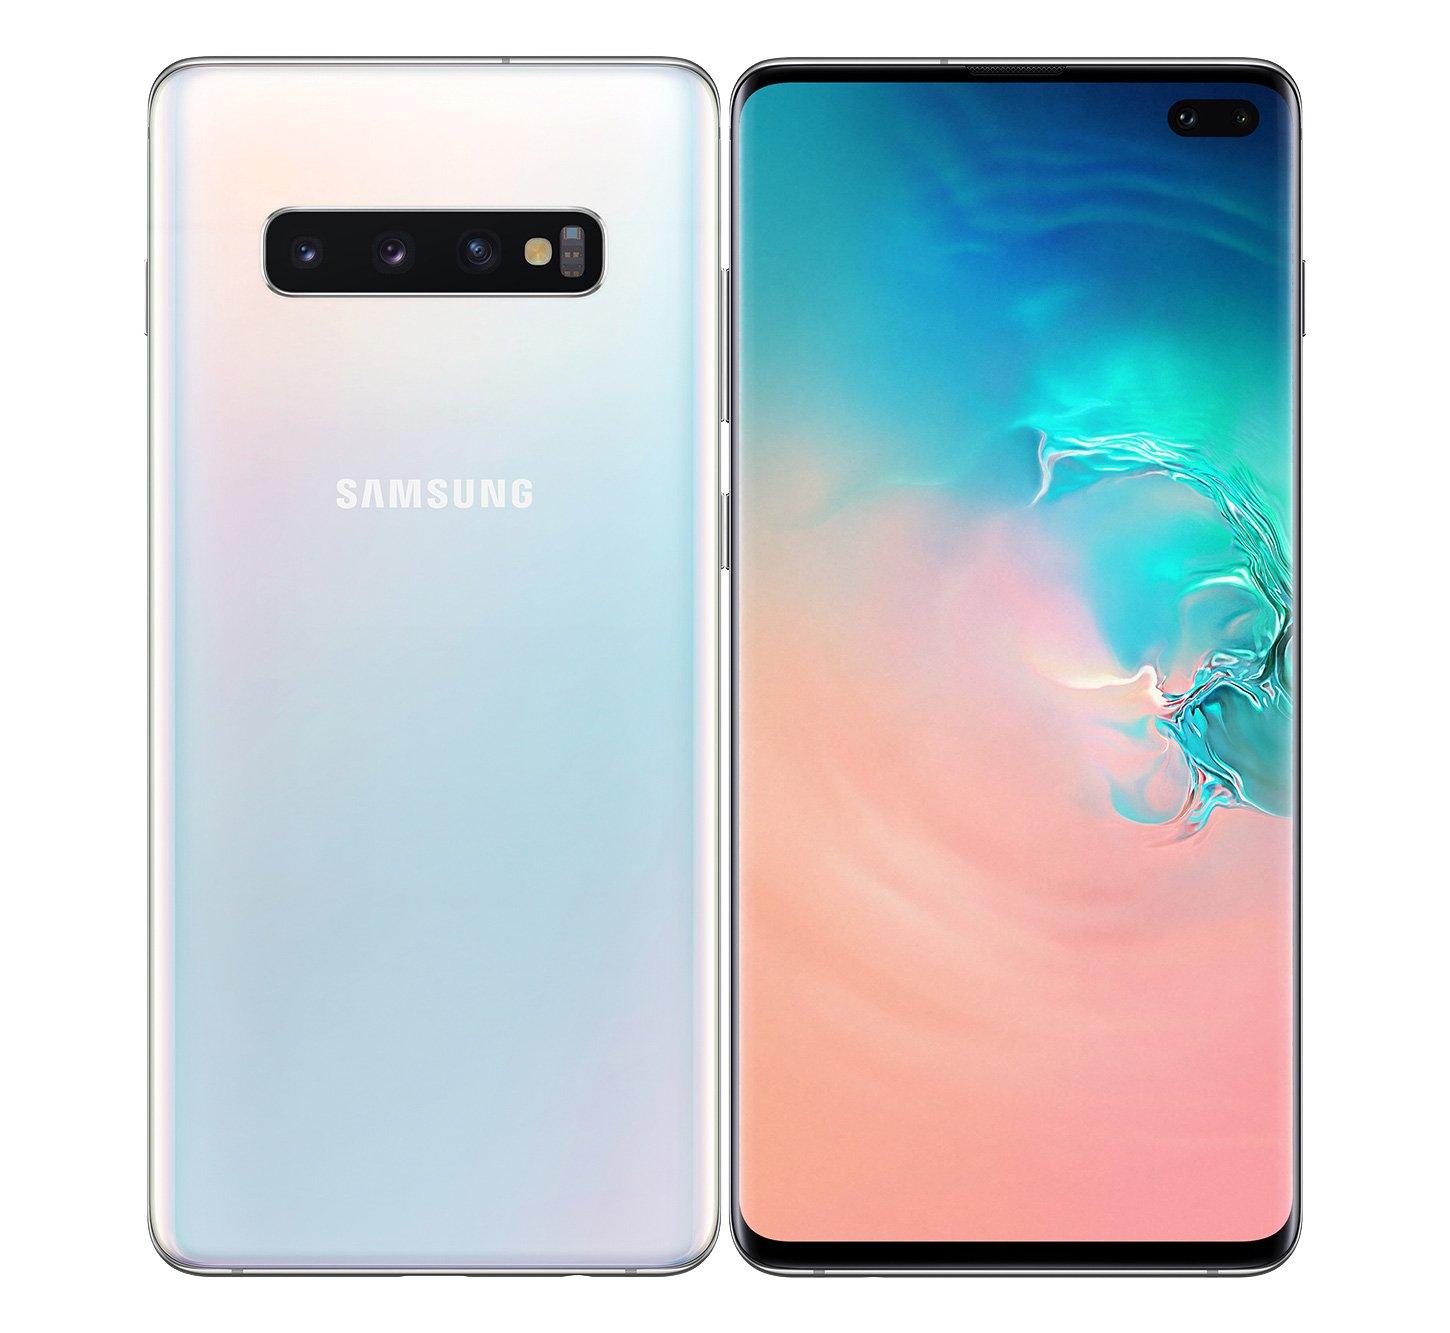  Samsung  Galaxy S10  Plus 128 GB White eXtra Saudi